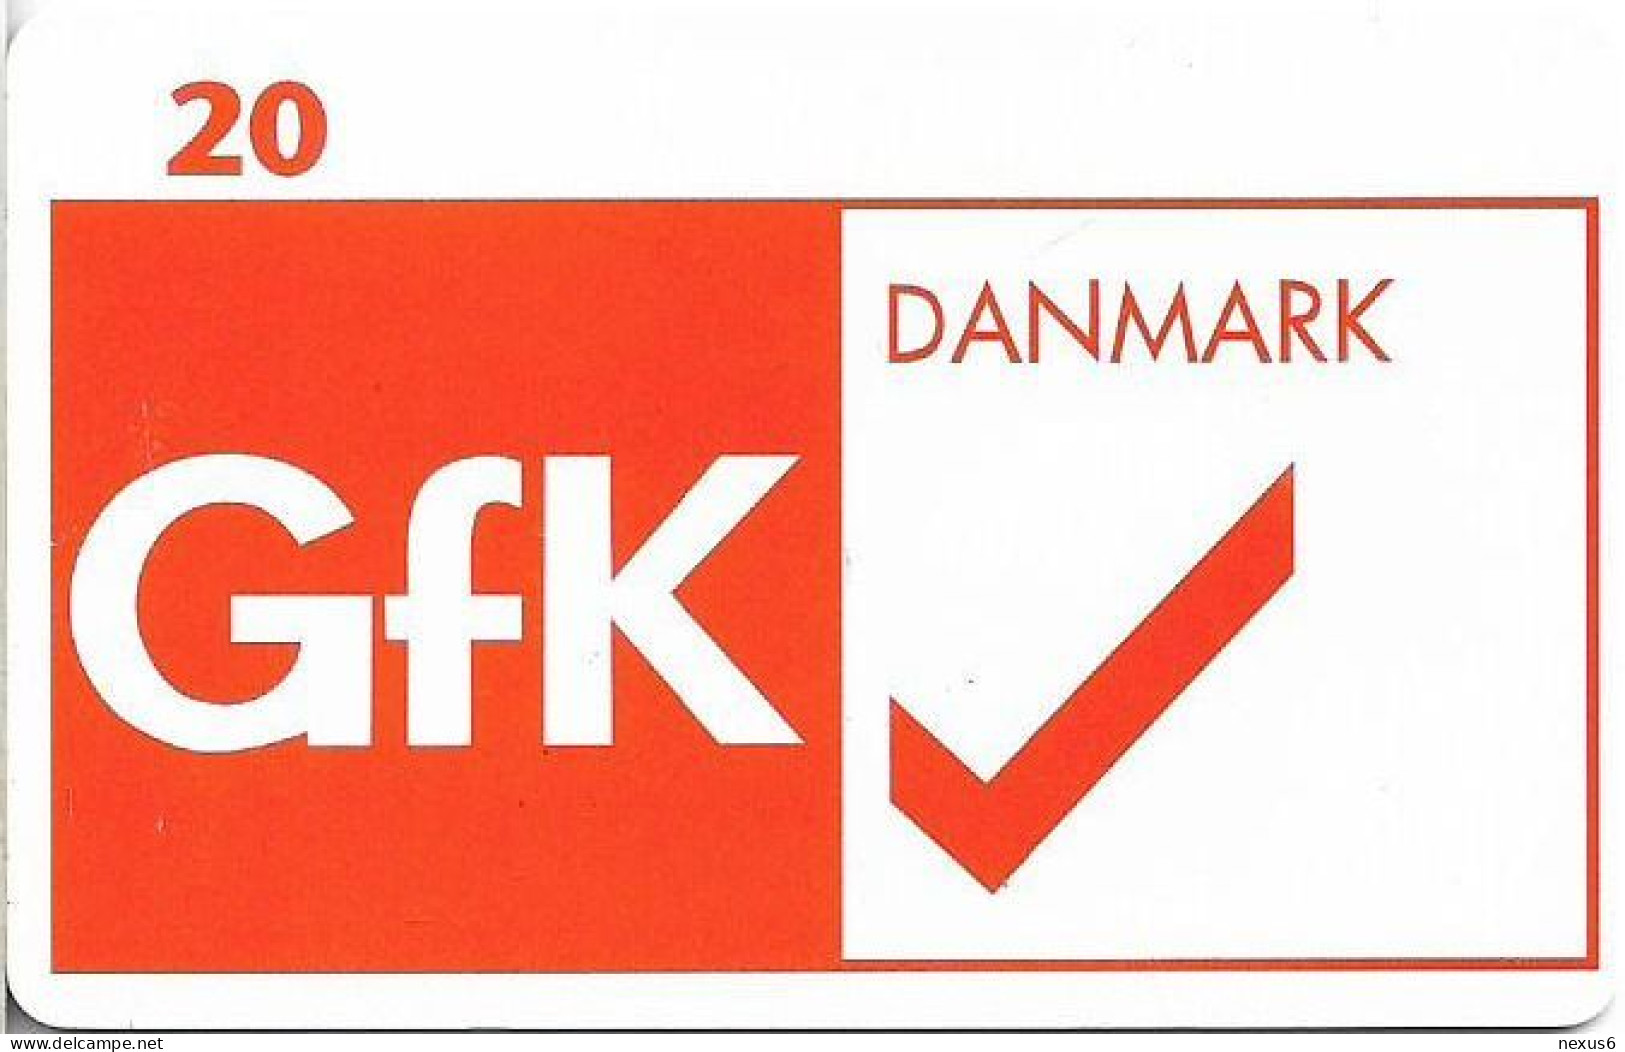 Denmark - Tele Danmark (chip) - GFK Danmark AS - TDP213B - 07.1998, 1.100ex, 20kr, Used - Dänemark